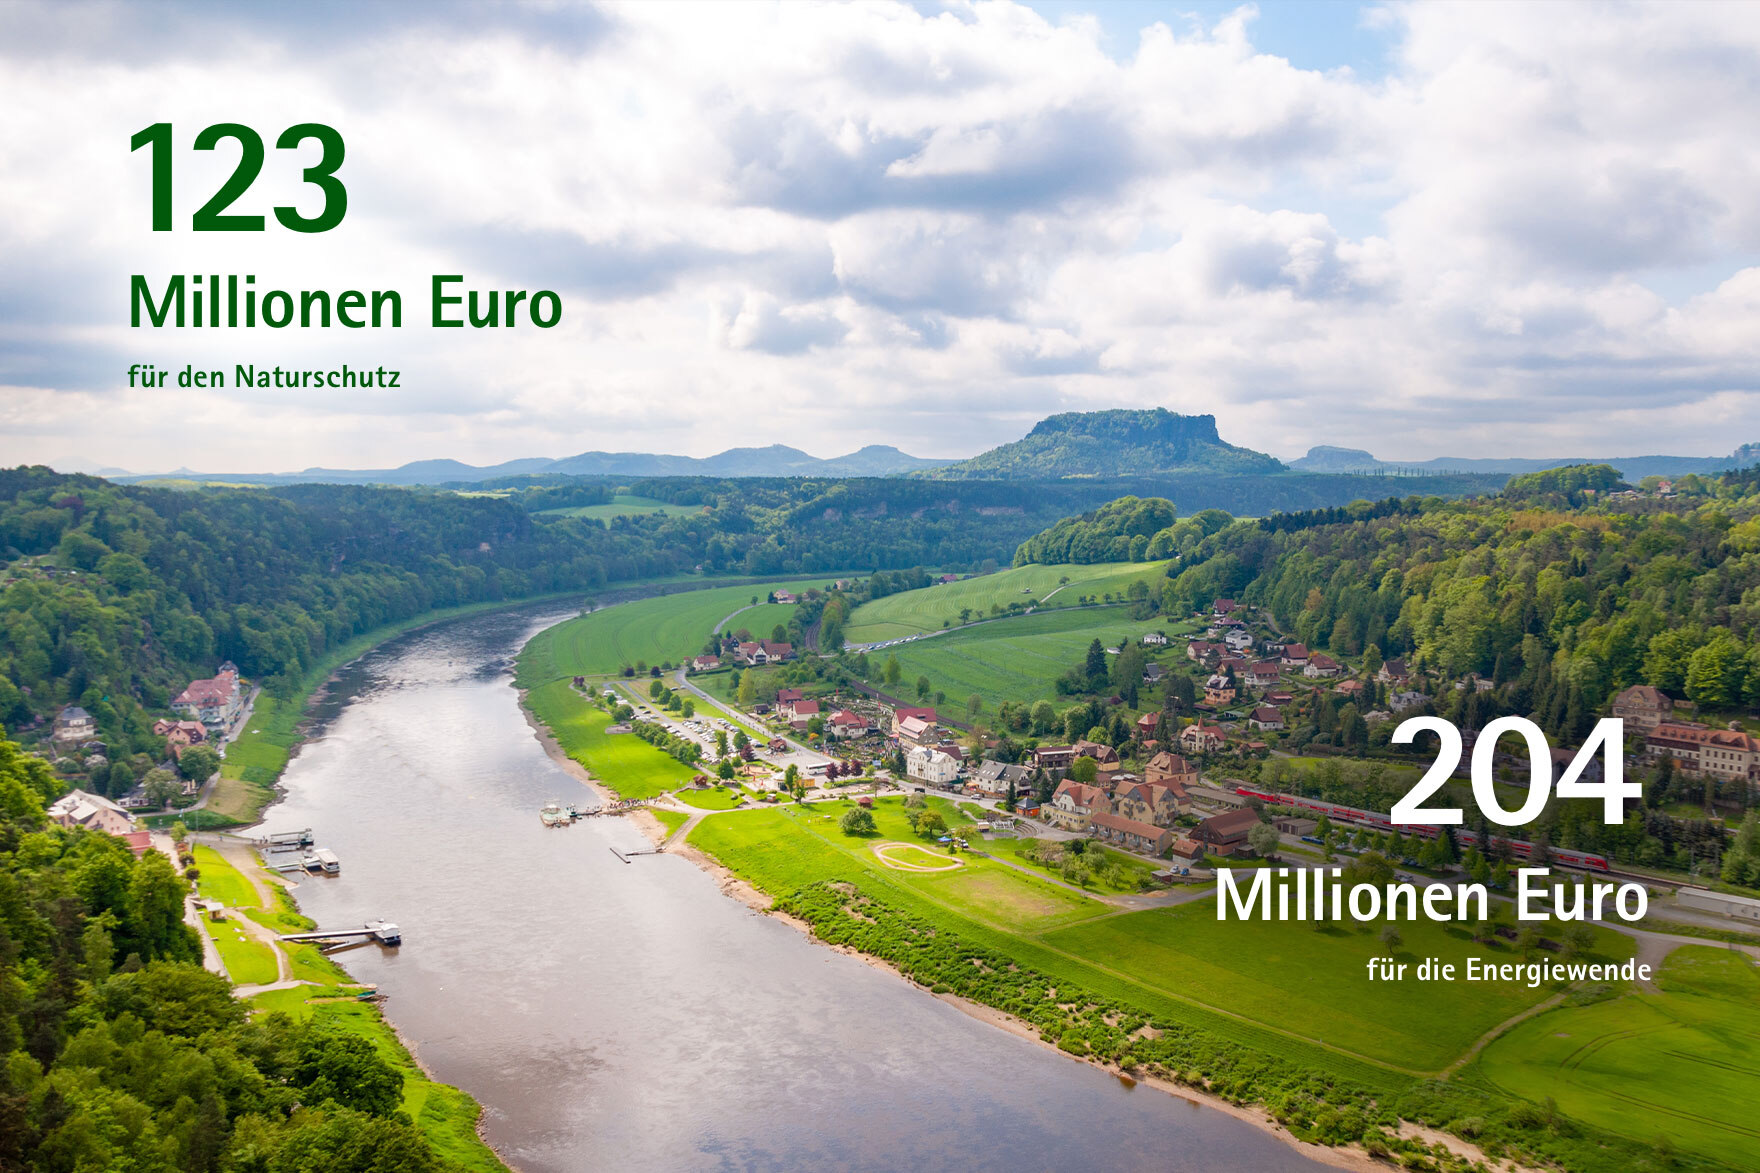 123 Millionen Euro für den Naturschutz, 204 Millionen Euro für die Energiewende